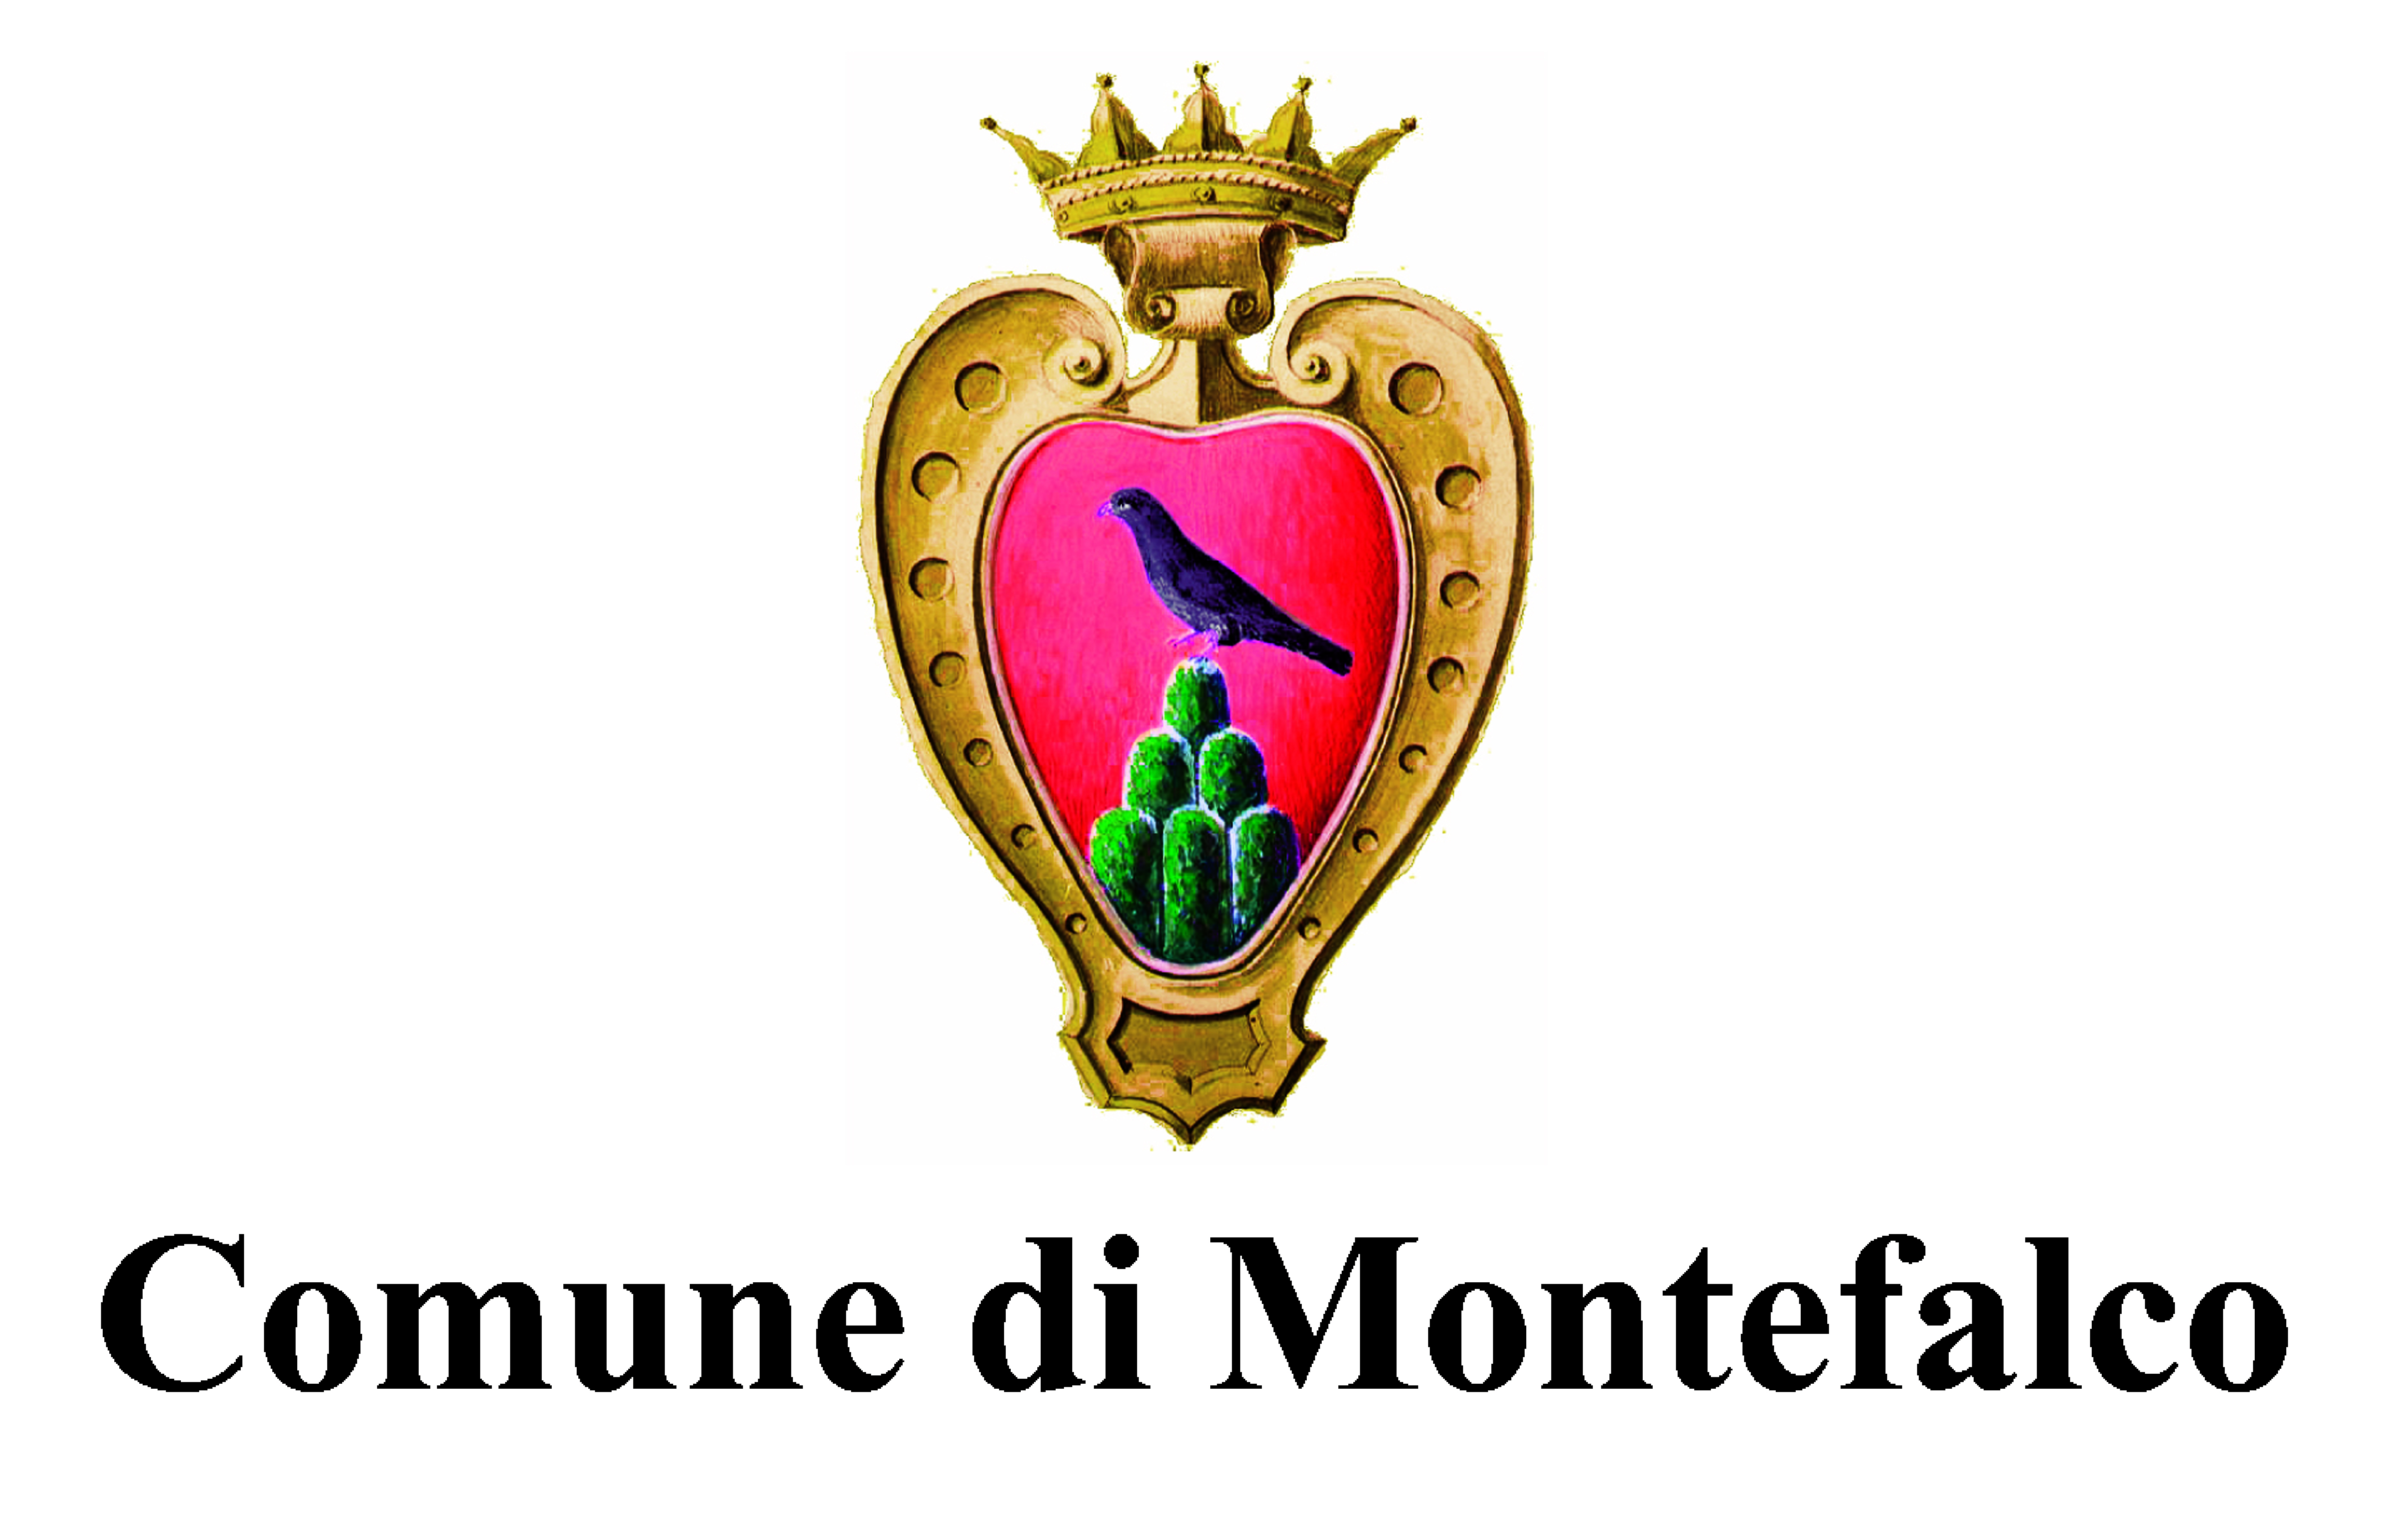 Comune di Montefalco (PG)